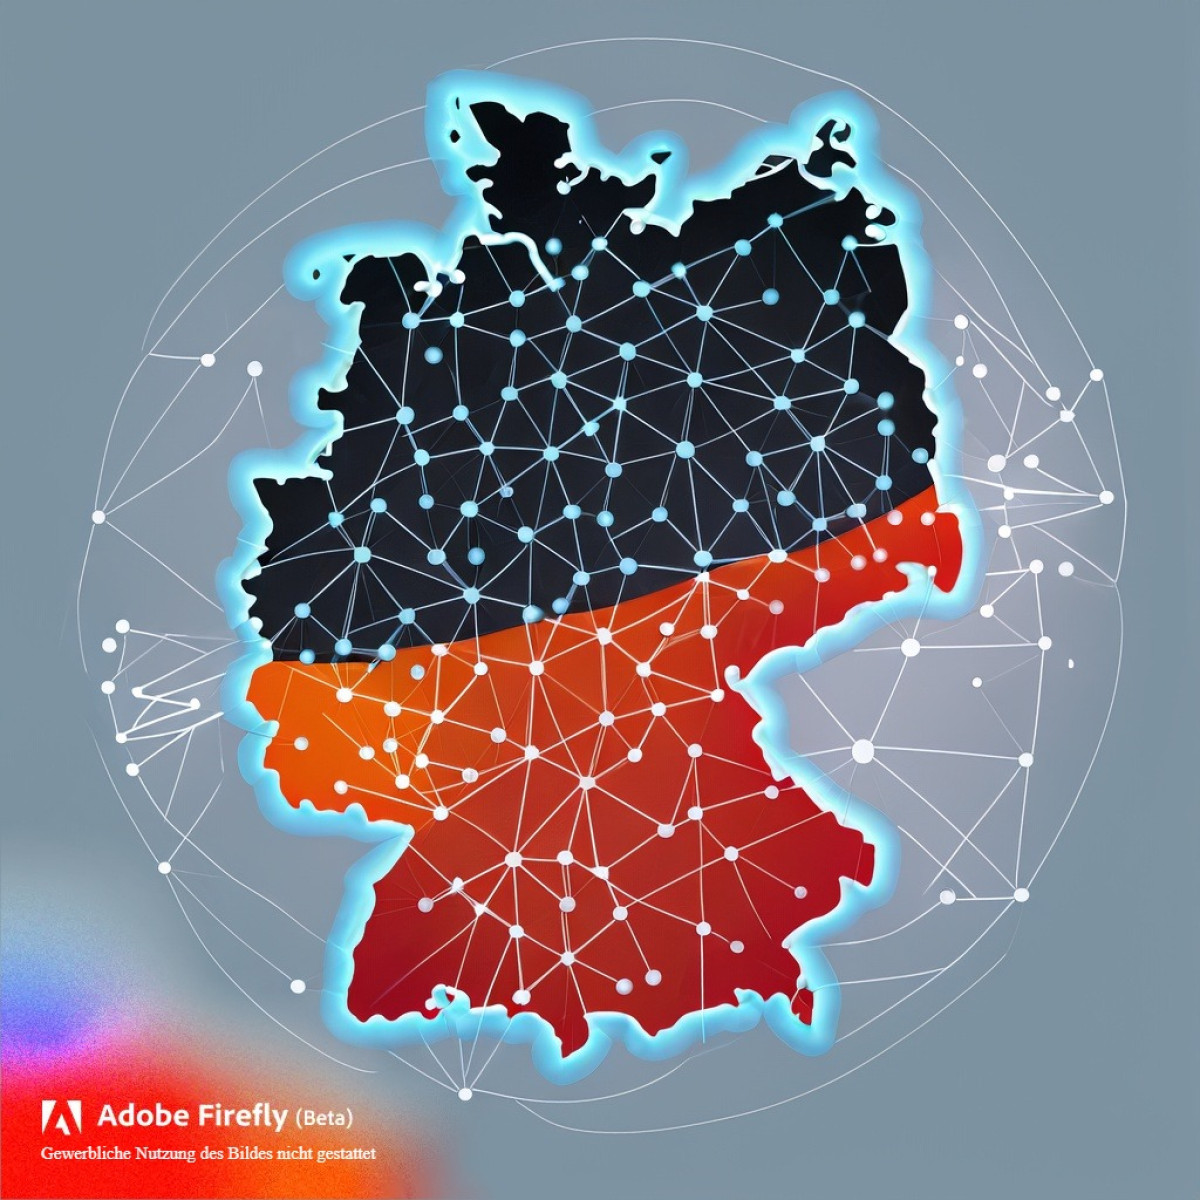 Digitaler Wandel in Deutschland: Ambitionierte Ziele treffen auf Realität